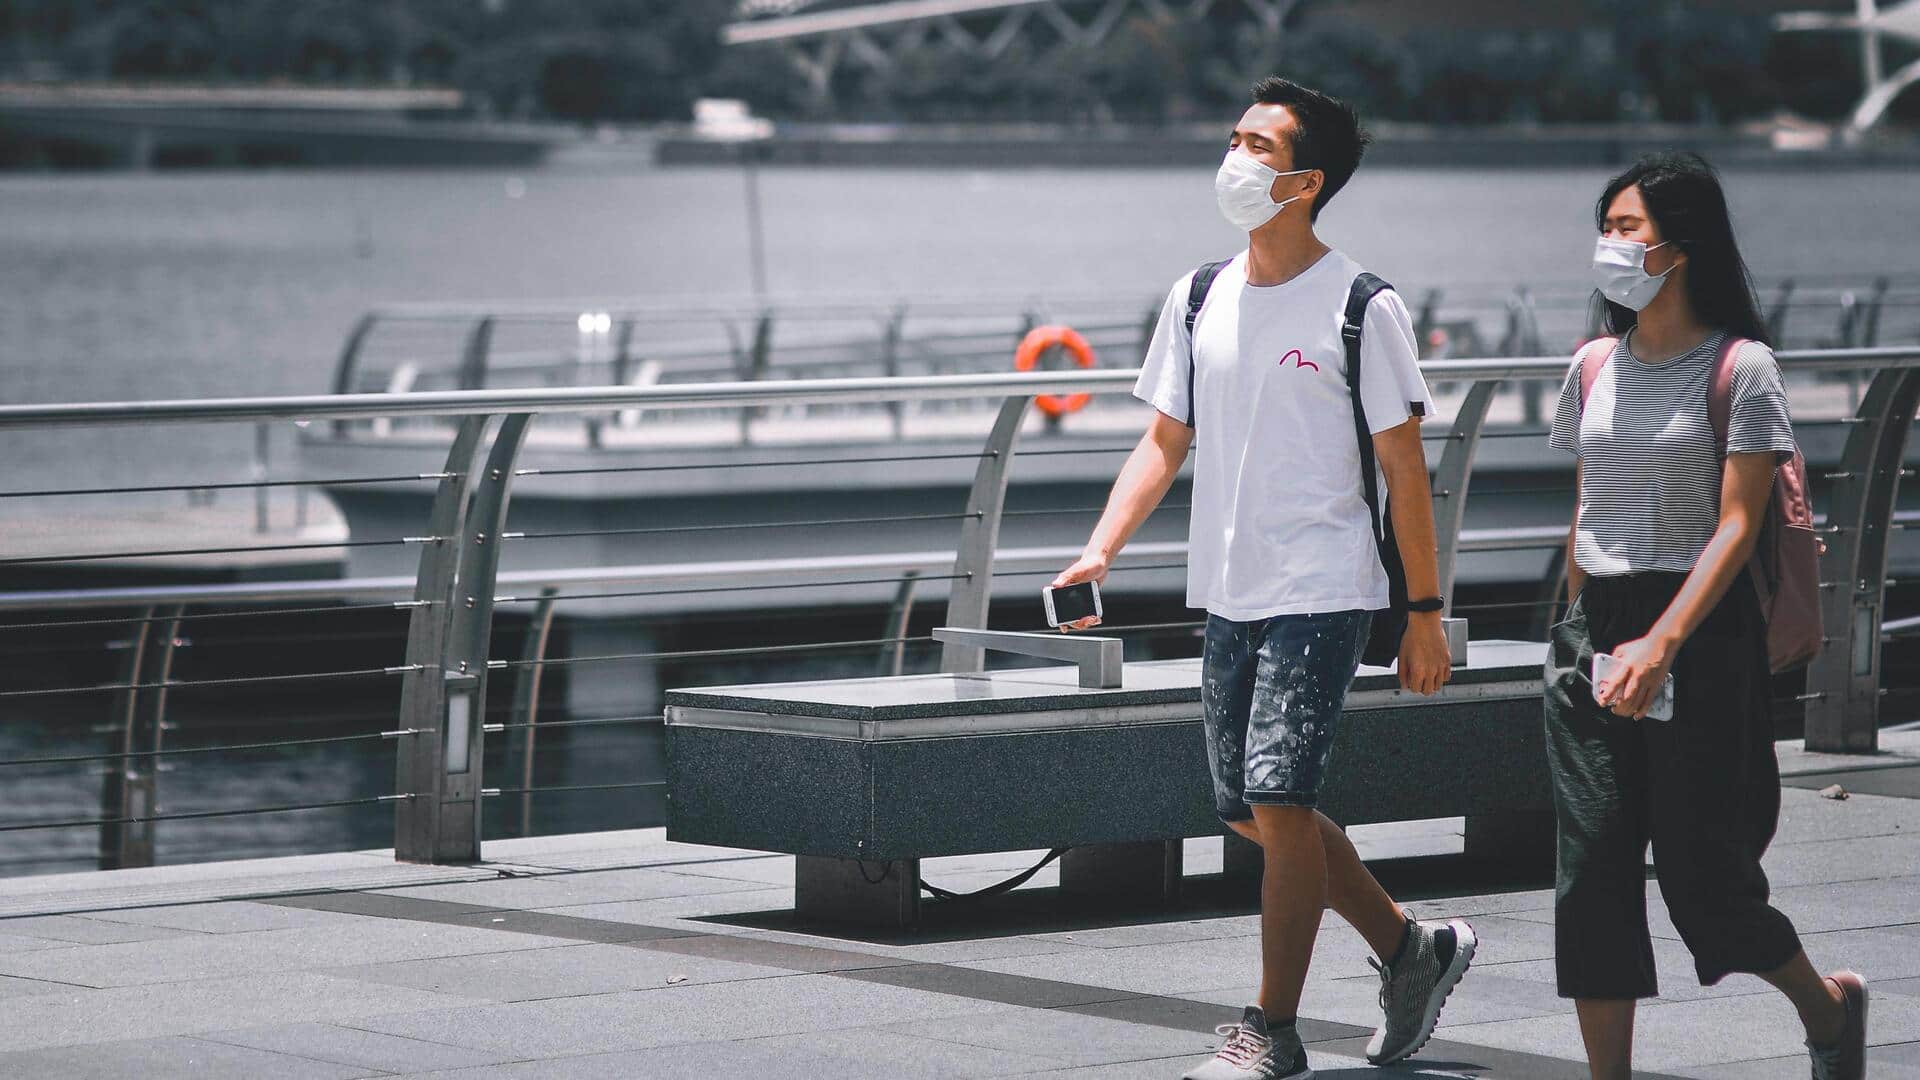 सिंगापुर में कोरोना वायरस के मामलों में बड़ी वृद्धि, लोगों के मुंह पर वापस लौटा मास्क